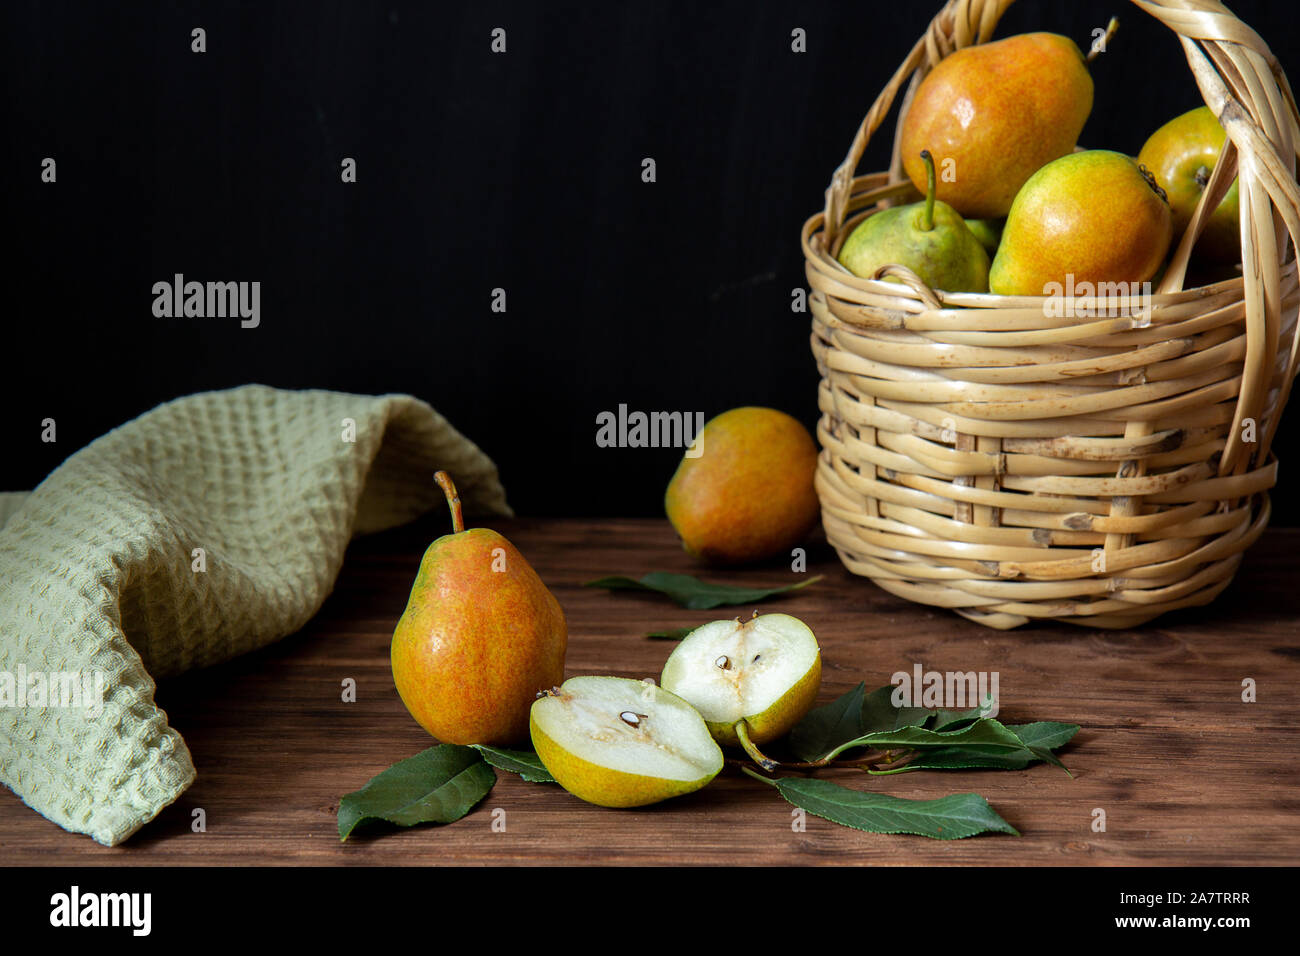 Einen Weidenkorb mit reife Birnen steht auf einem Holztisch. In der Nähe befinden sich drei Birnen. Eine Birne halbiert. Im Hintergrund ist eine grüne Serviette. Stockfoto